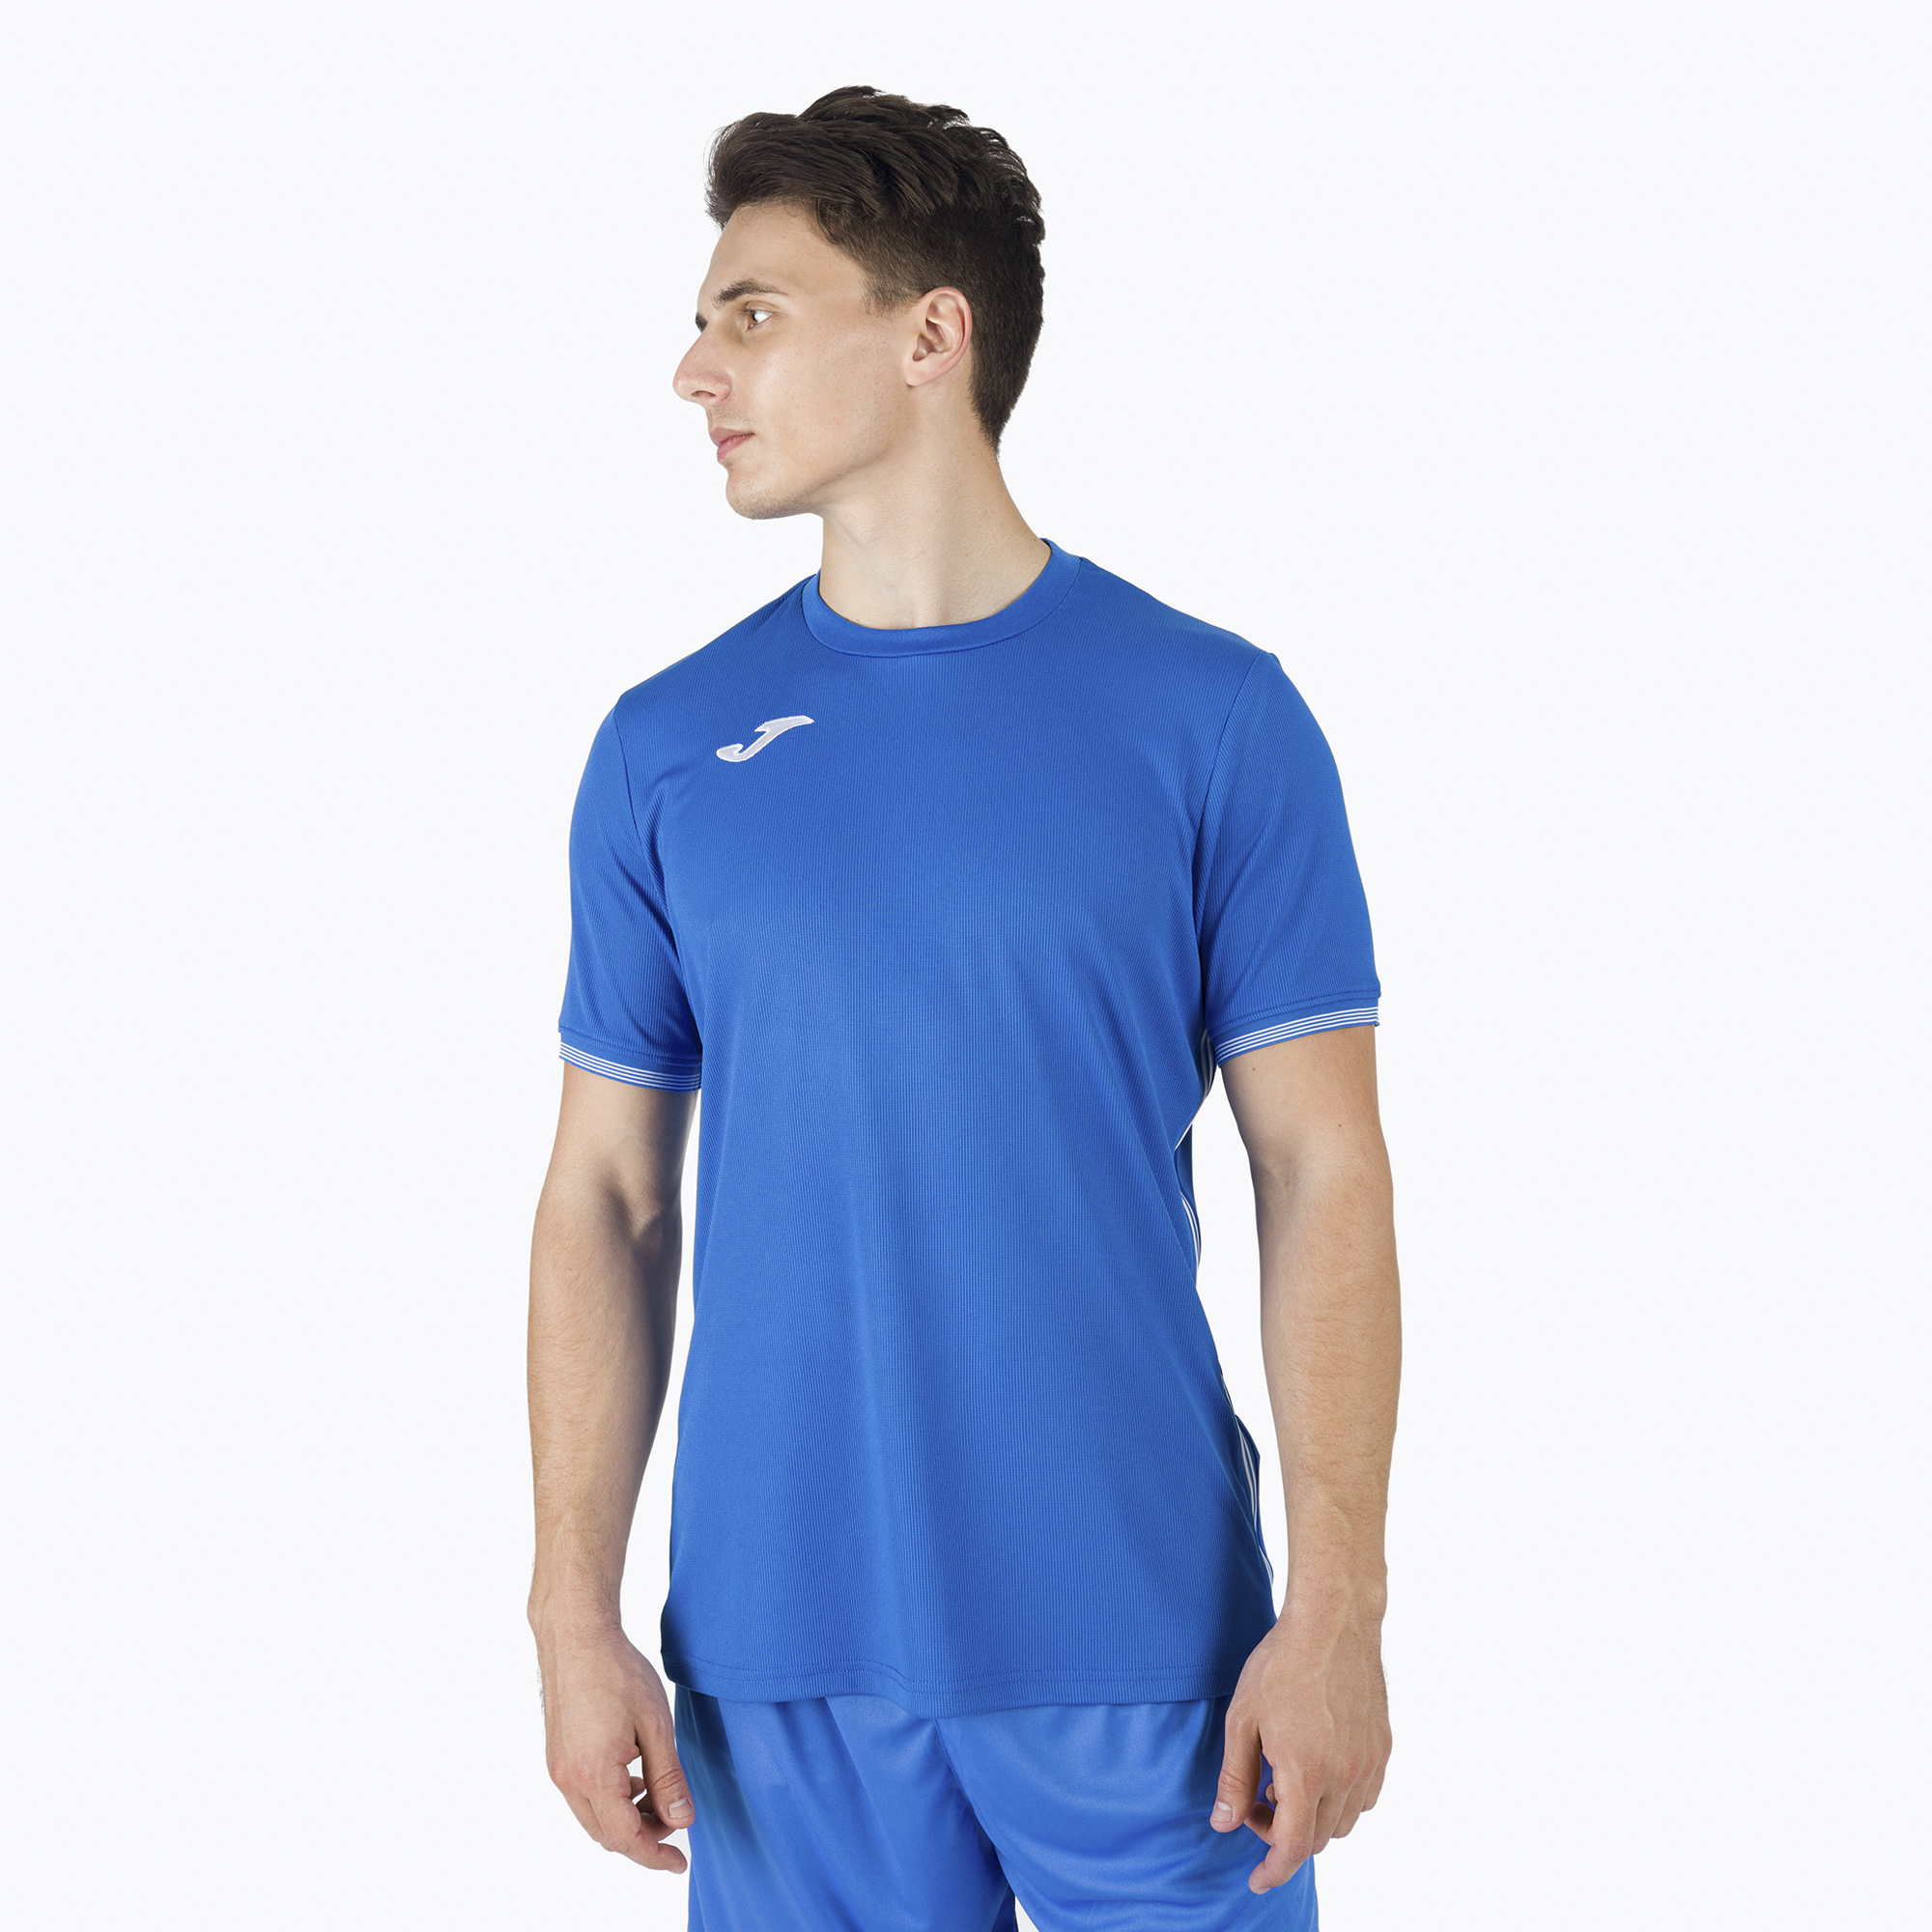 Joma Compus III tricou de fotbal albastru 101587.700